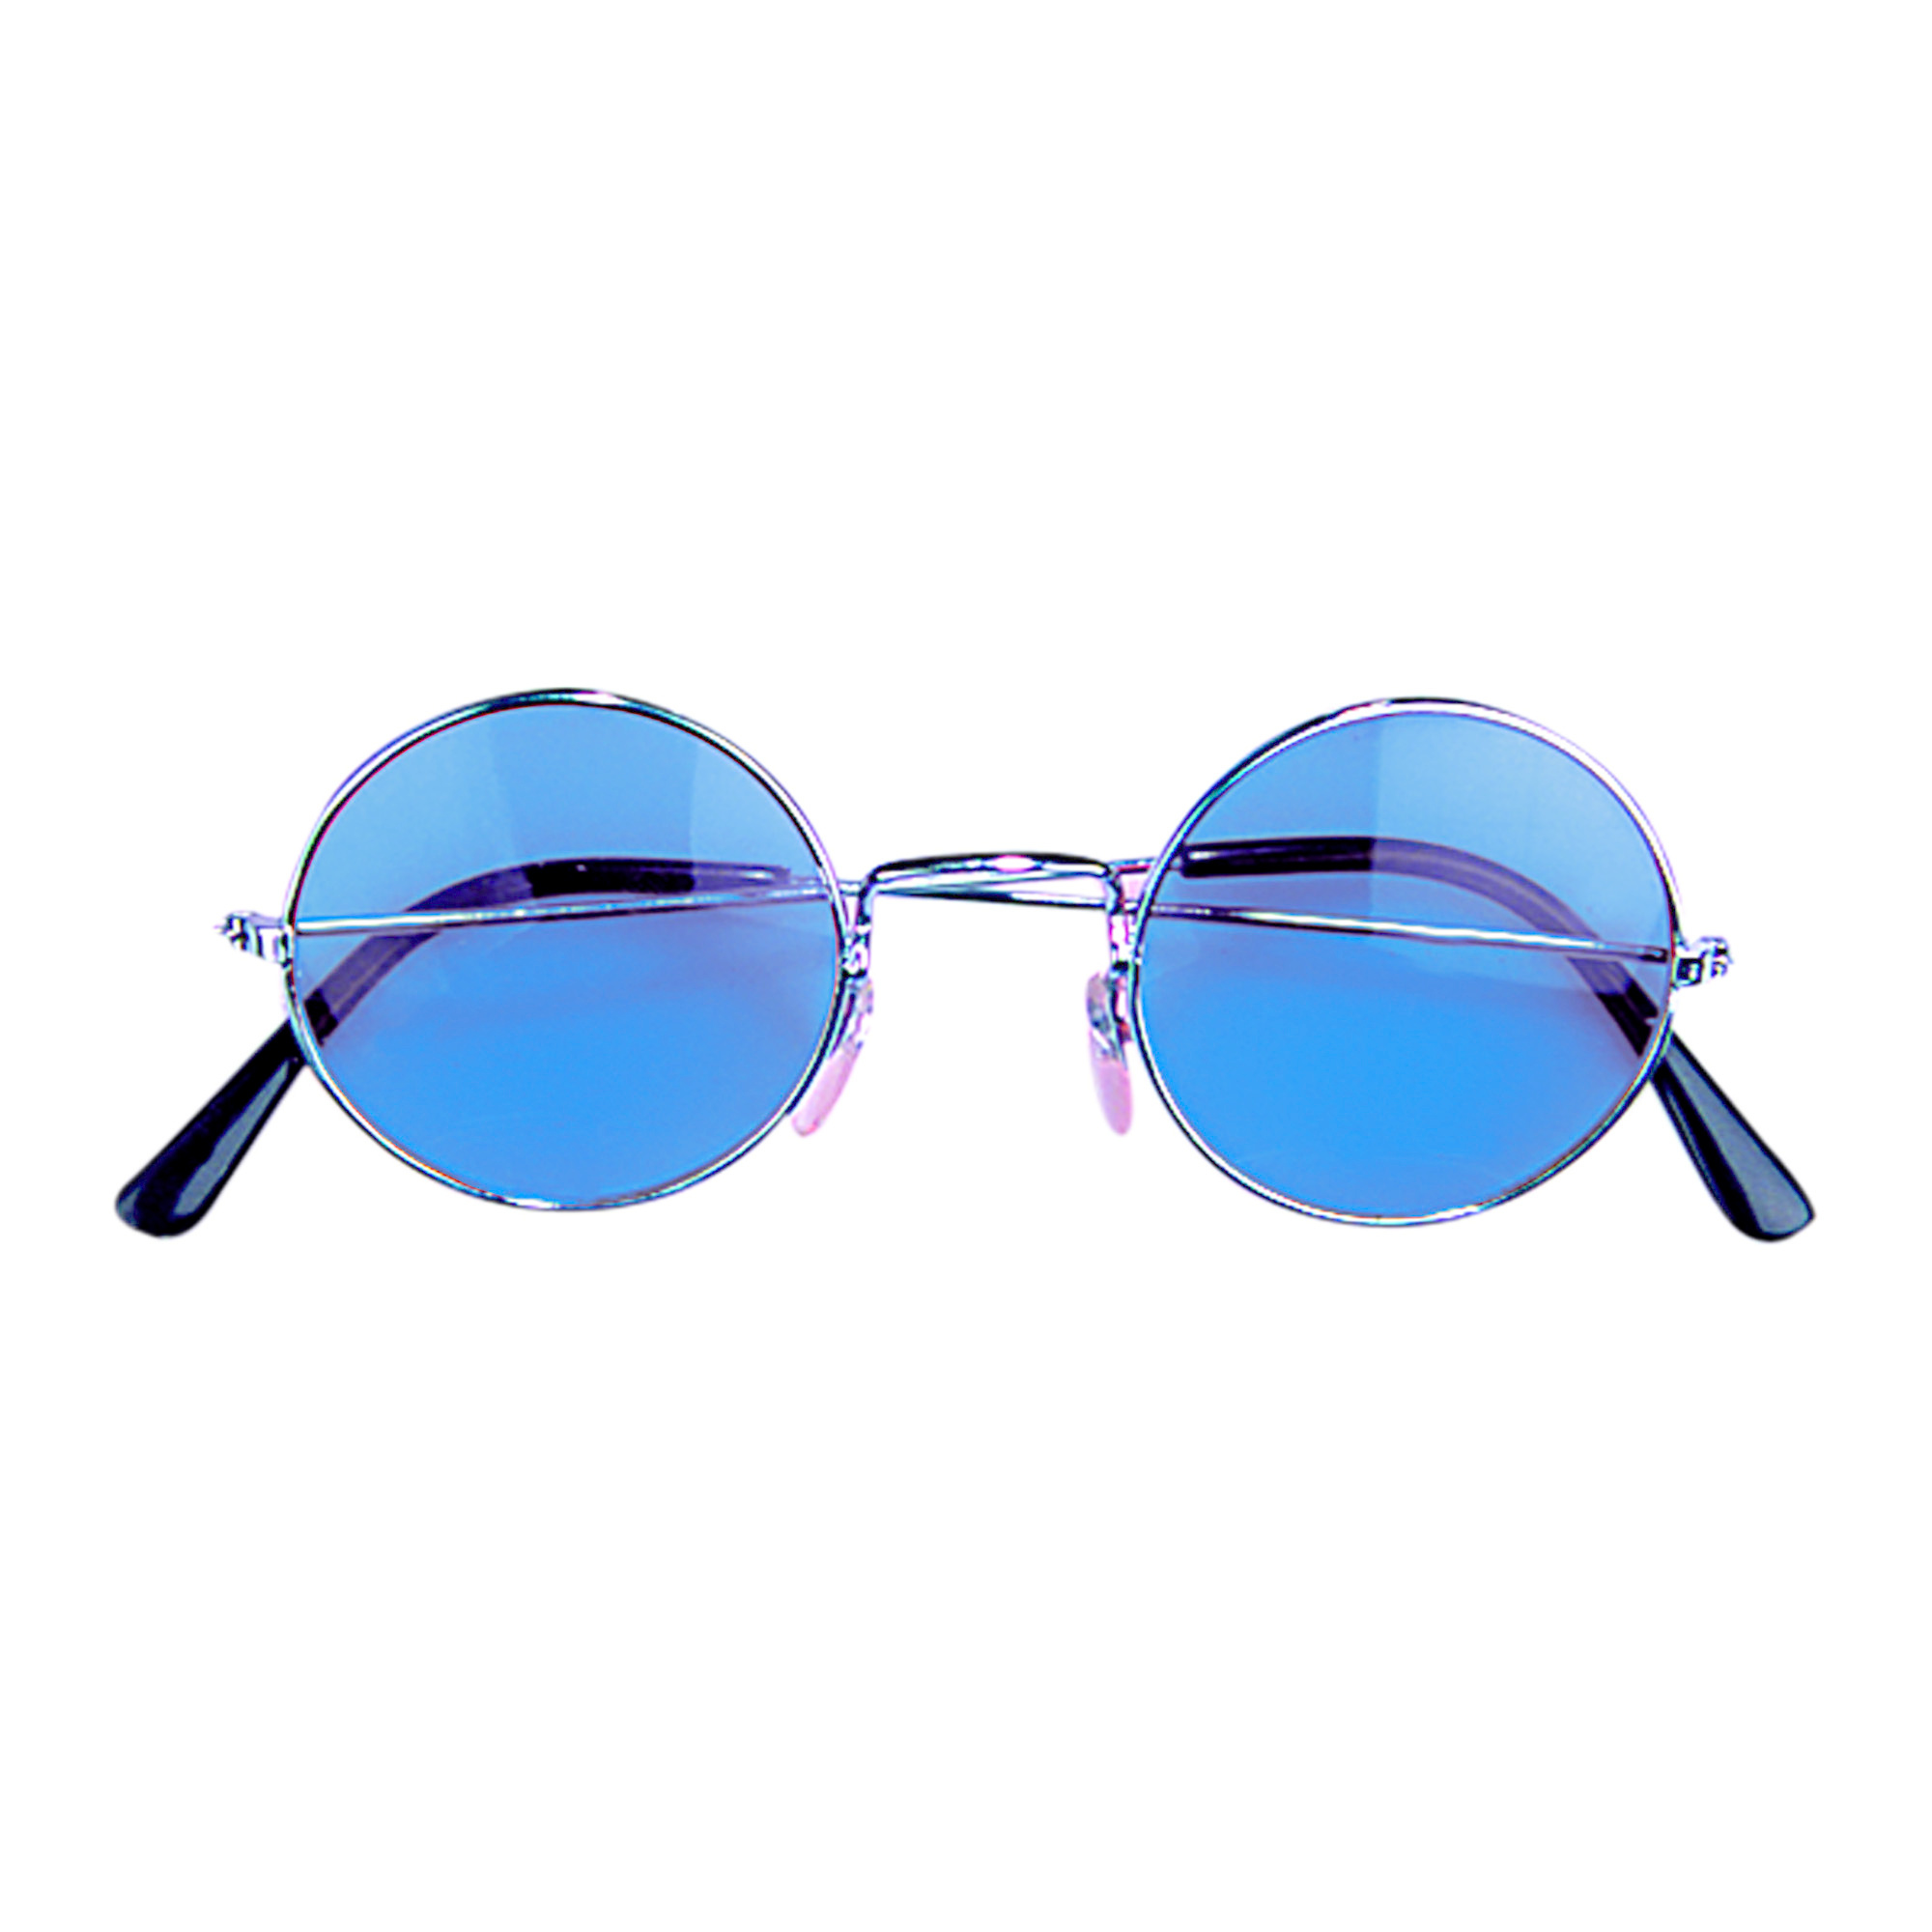 Купить синие очки. Круглые очки. Круглые солнцезащитные очки. Очки круглые синие. Синие солнцезащитные очки.